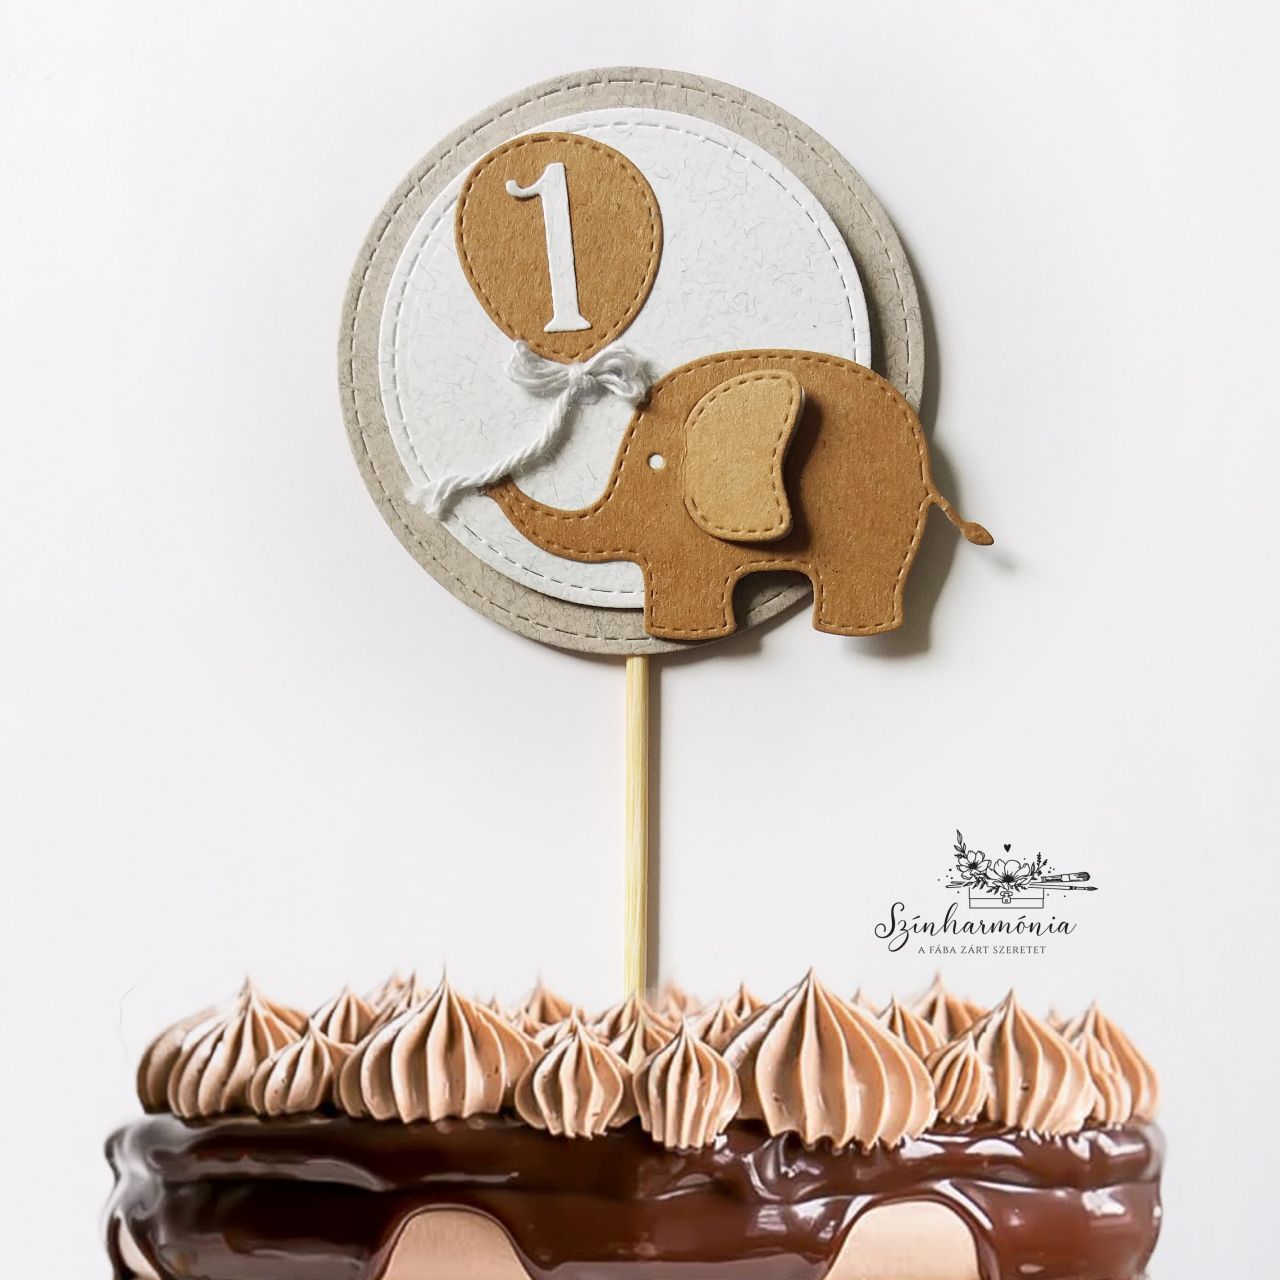 Térhatású tortabeszúró - Barna elefánt (évszámos)